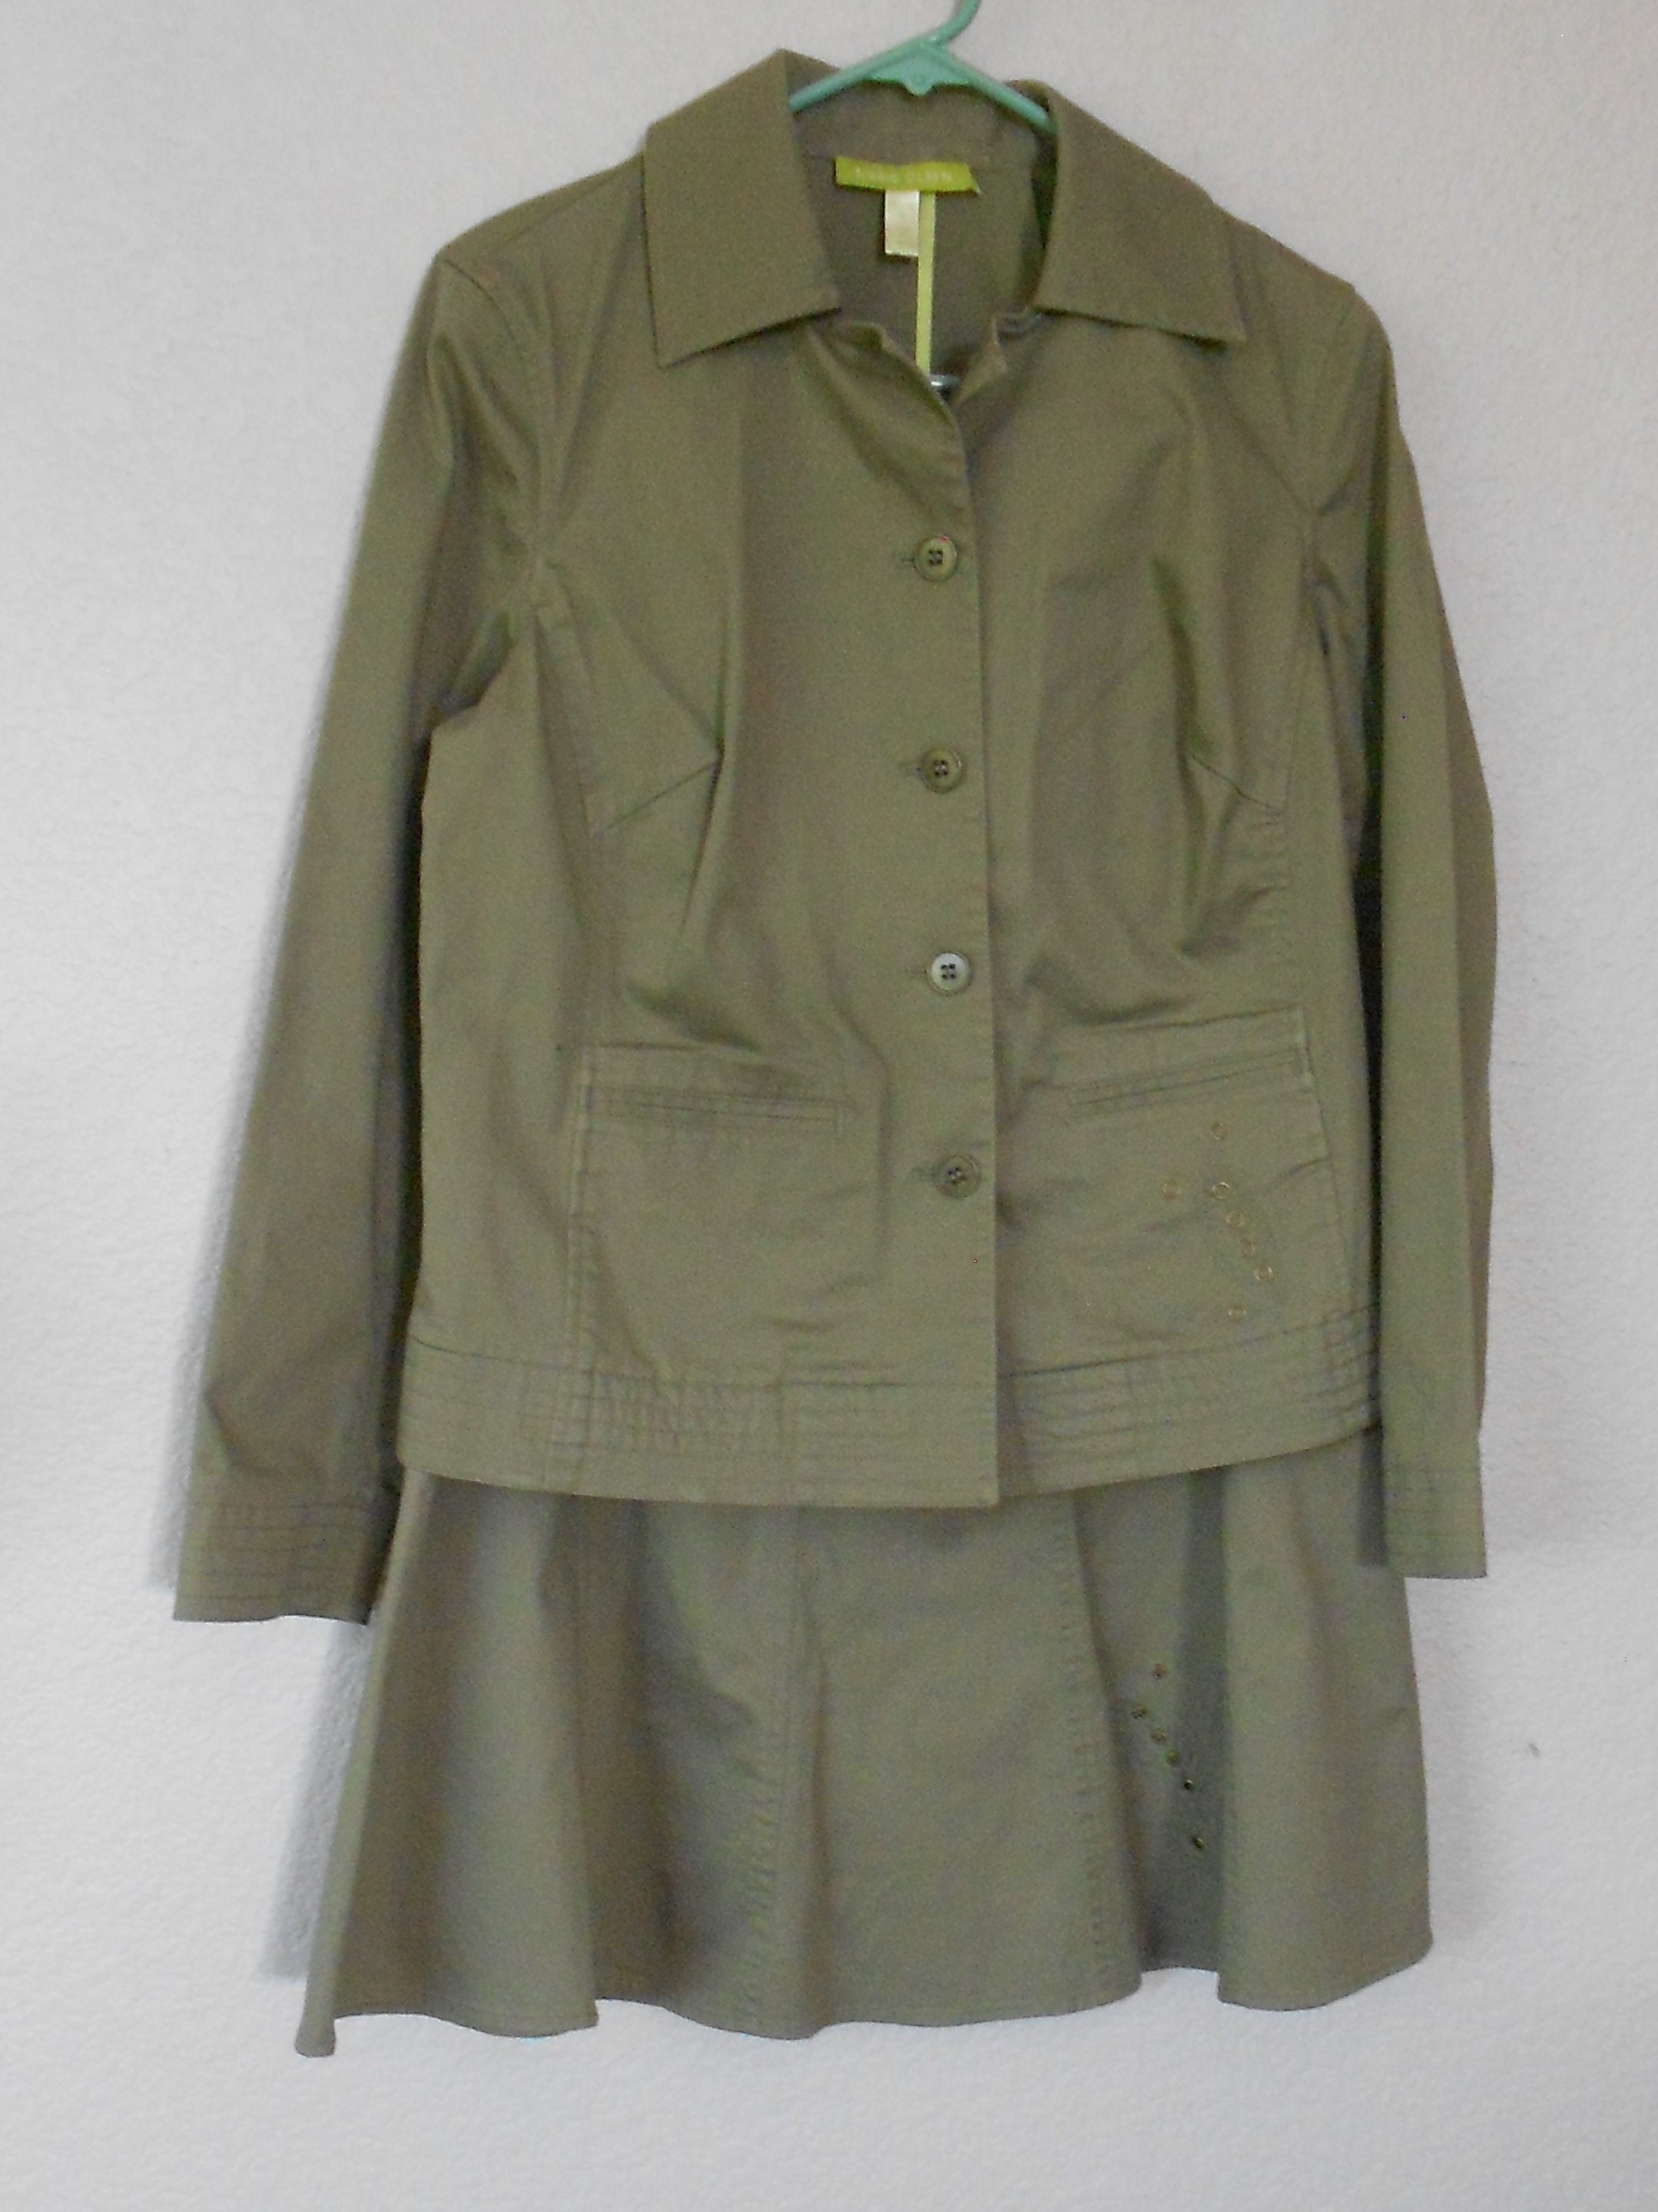 Sigrid Olsen Size 8 Cotton Blend Jacket Skirt 2Pc Suit/Olive Green Sport Suit/Metal Leave Pattern Unique Flare Suit